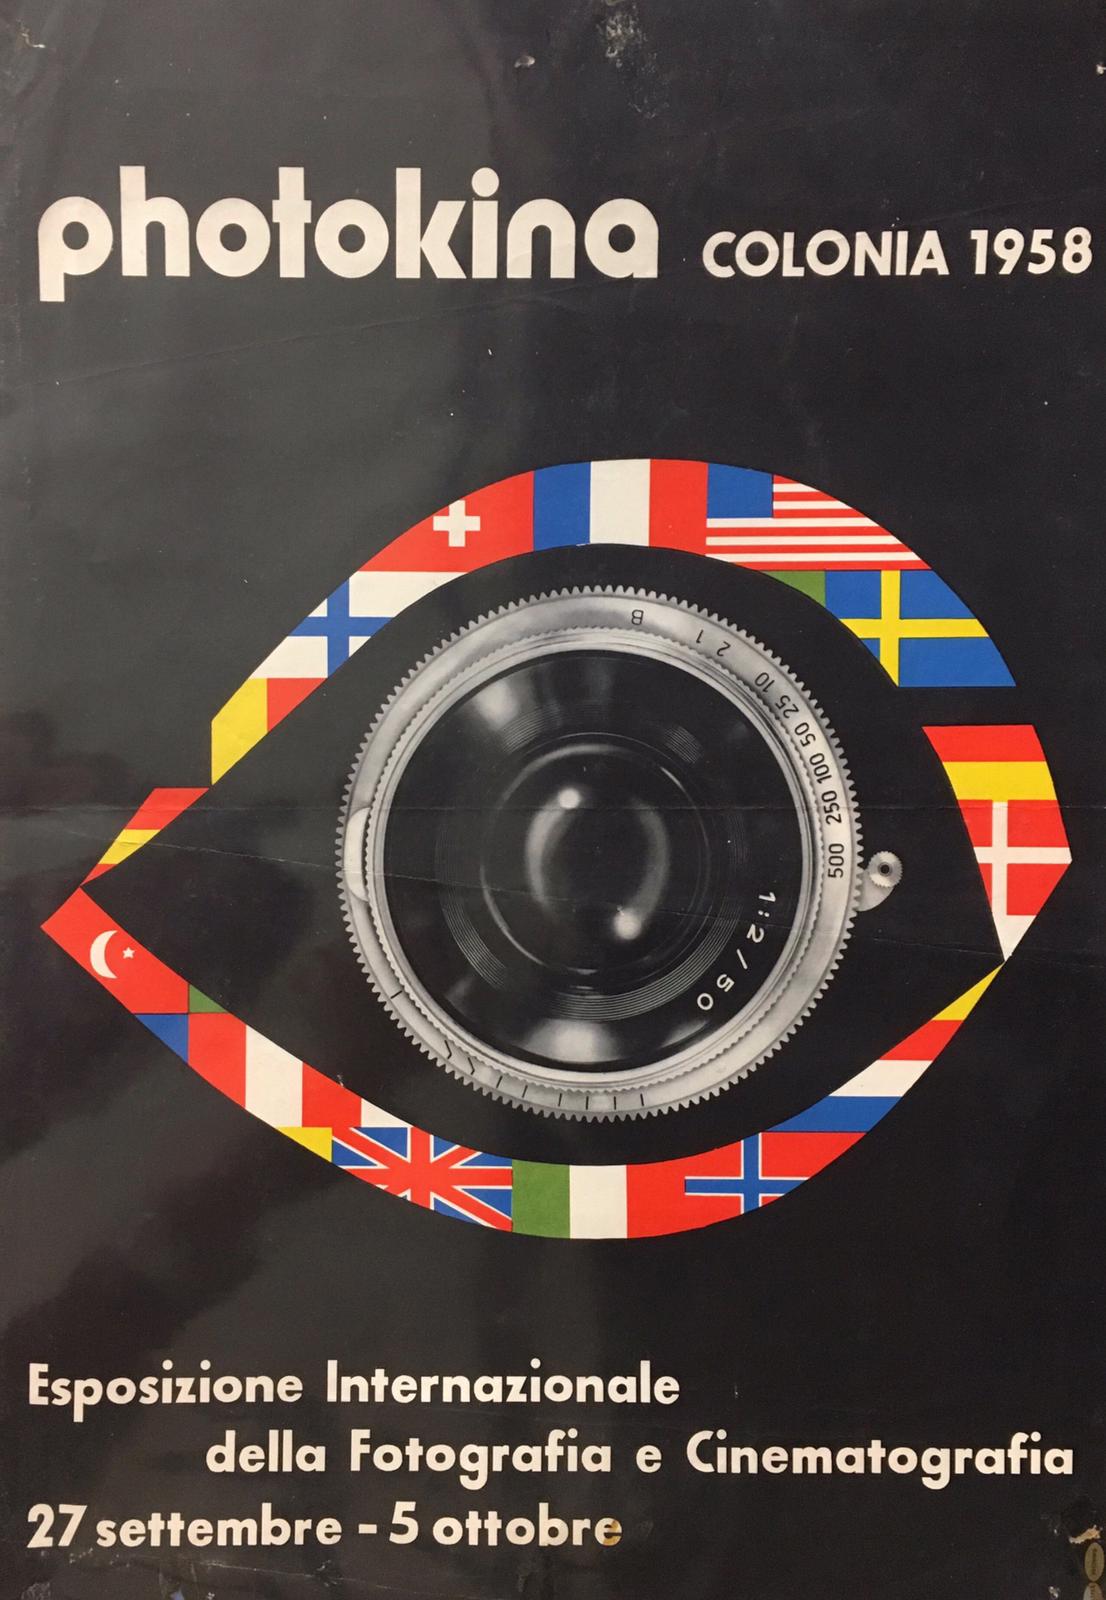 Esposizione Internazionale Fotografia E Cinematografia Photokina Colonia 1958 Tortona4Arte